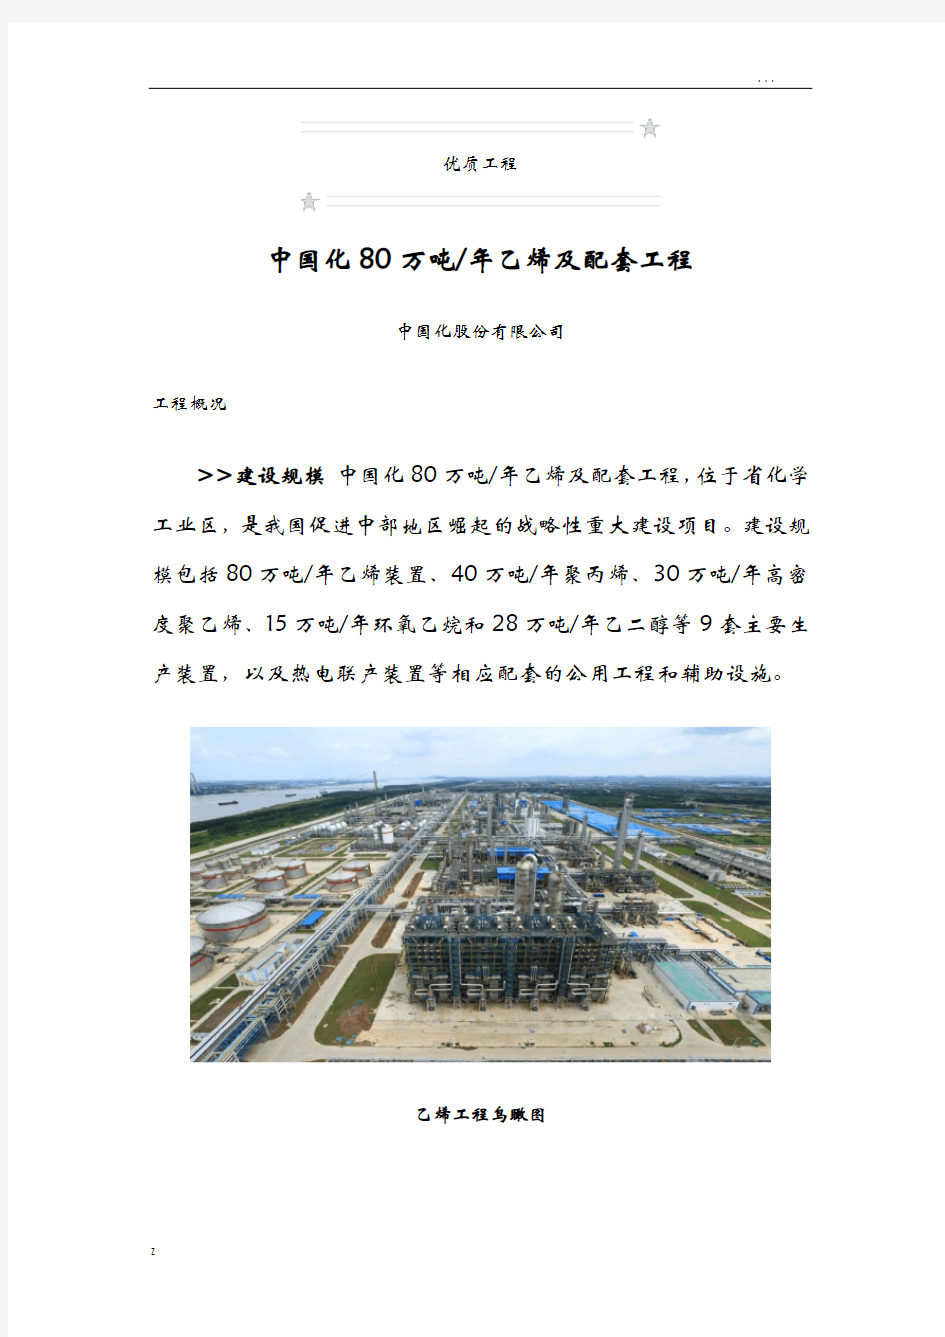 中国石化武汉80万吨年乙烯及配套工程